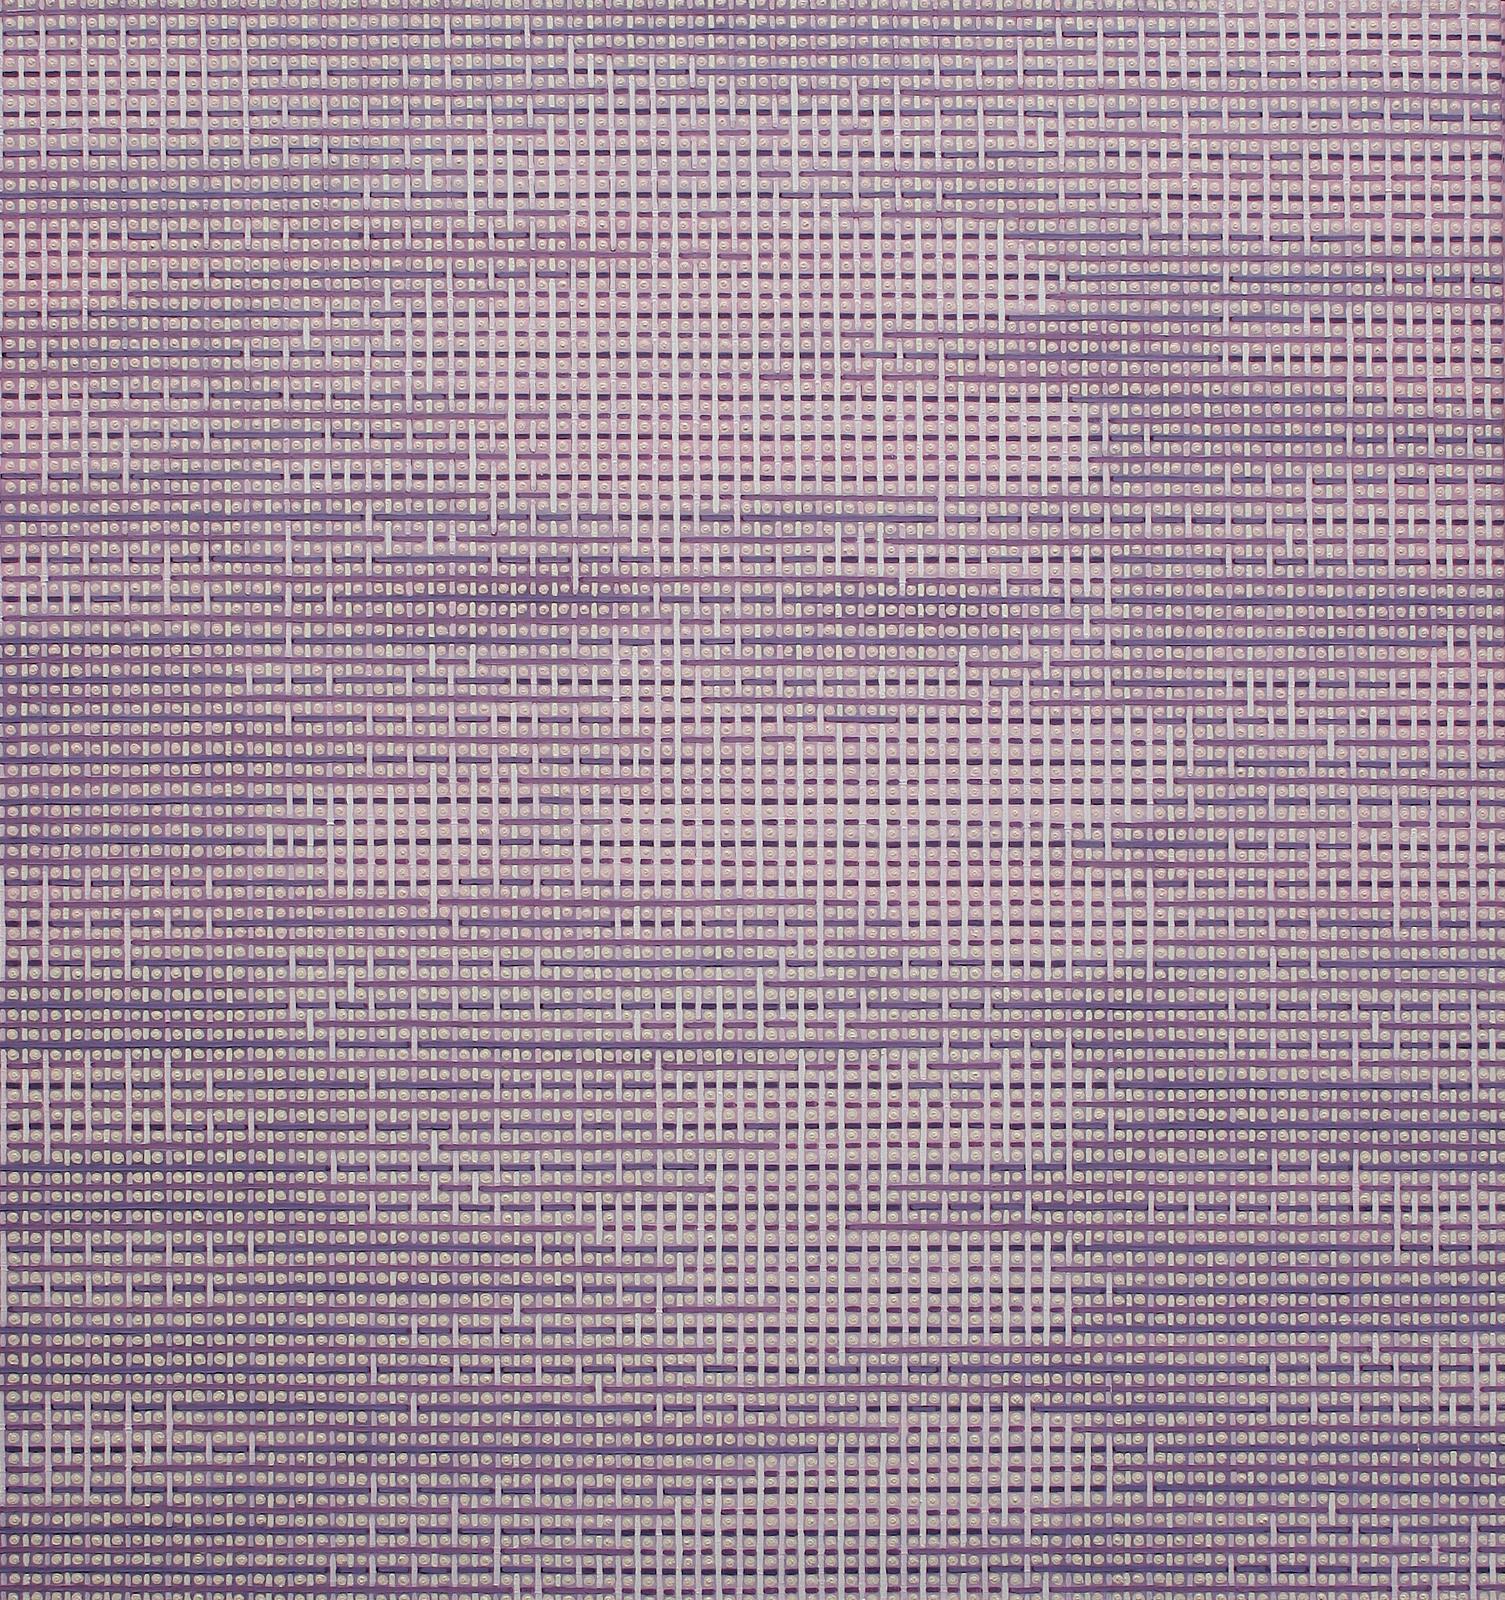 Andreas Lau, Anonym/Bildstörung, 2005, Eitempera auf Nessel, 160 x 150 cm, laa005ko, Preis auf Anfrage